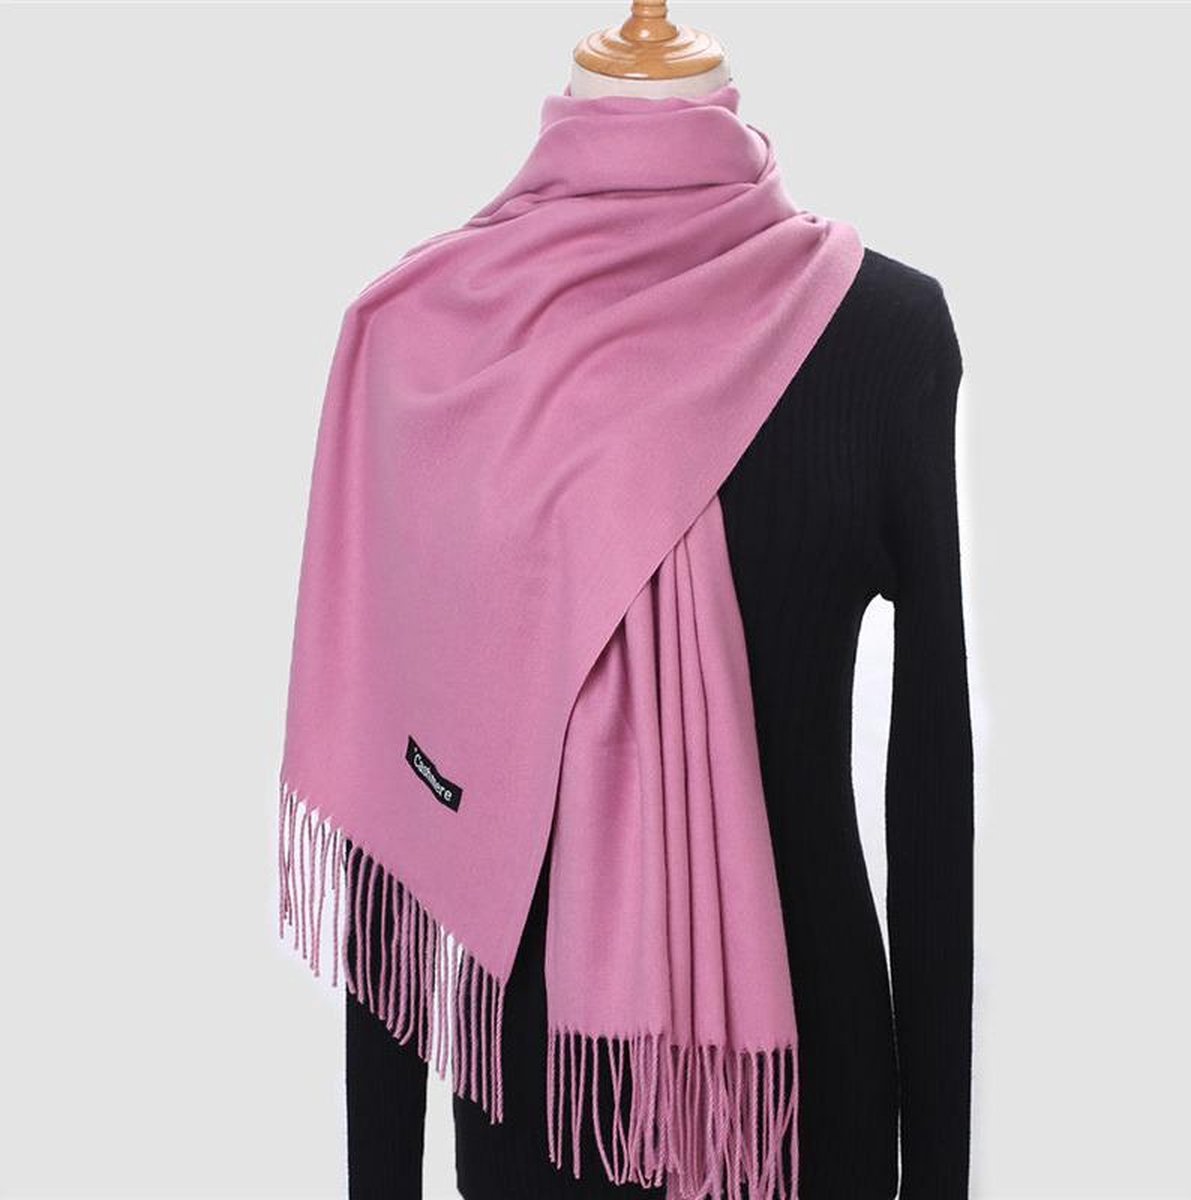 Kwaliteit warm Sjaal Roze - Pink Cashmere Scarf - Shawl - Kasjmir - Herfst en Winter - Roze